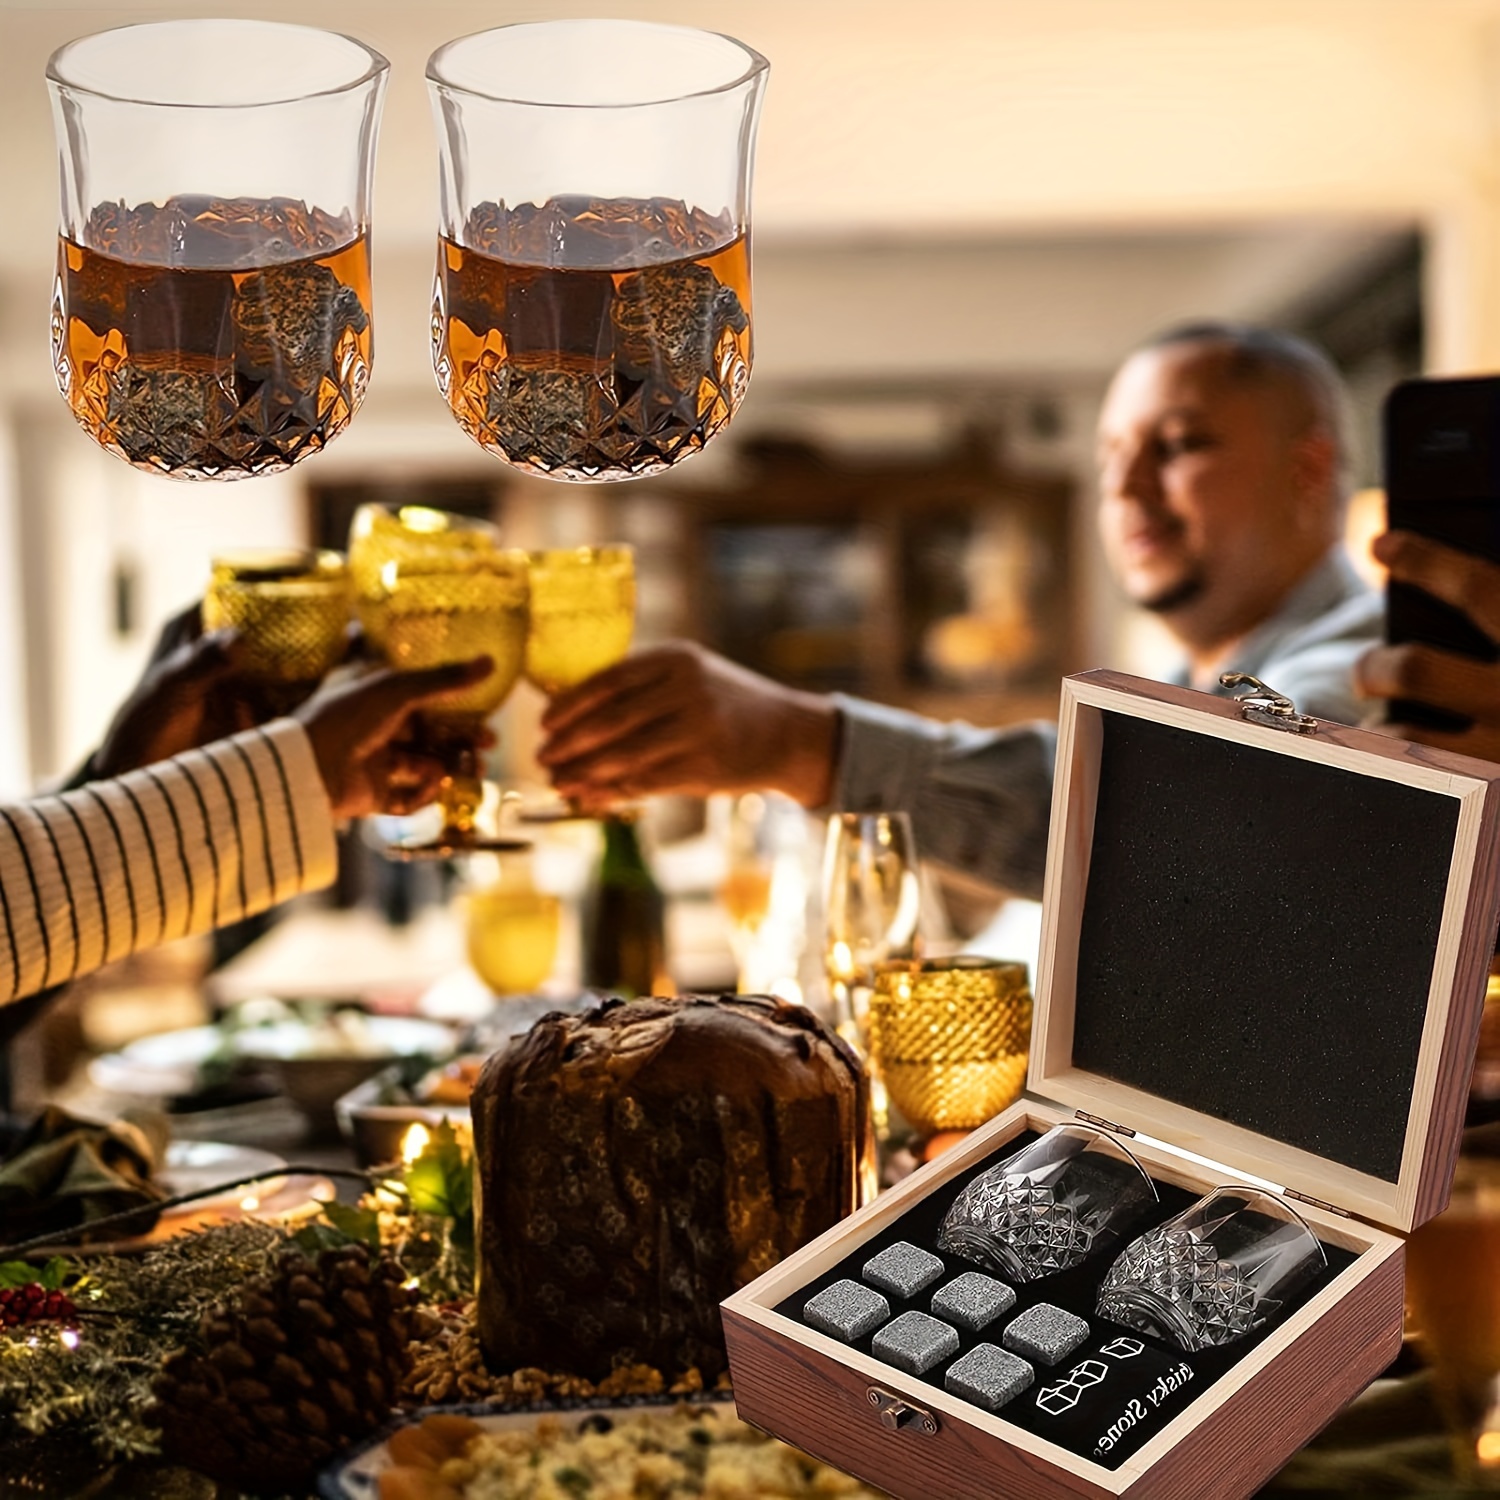 Regalos de cumpleaños para hombres, juego de regalos de piedras de whisky  para el día del padre, Navidad, el mejor regalo para hombres, papá, marido